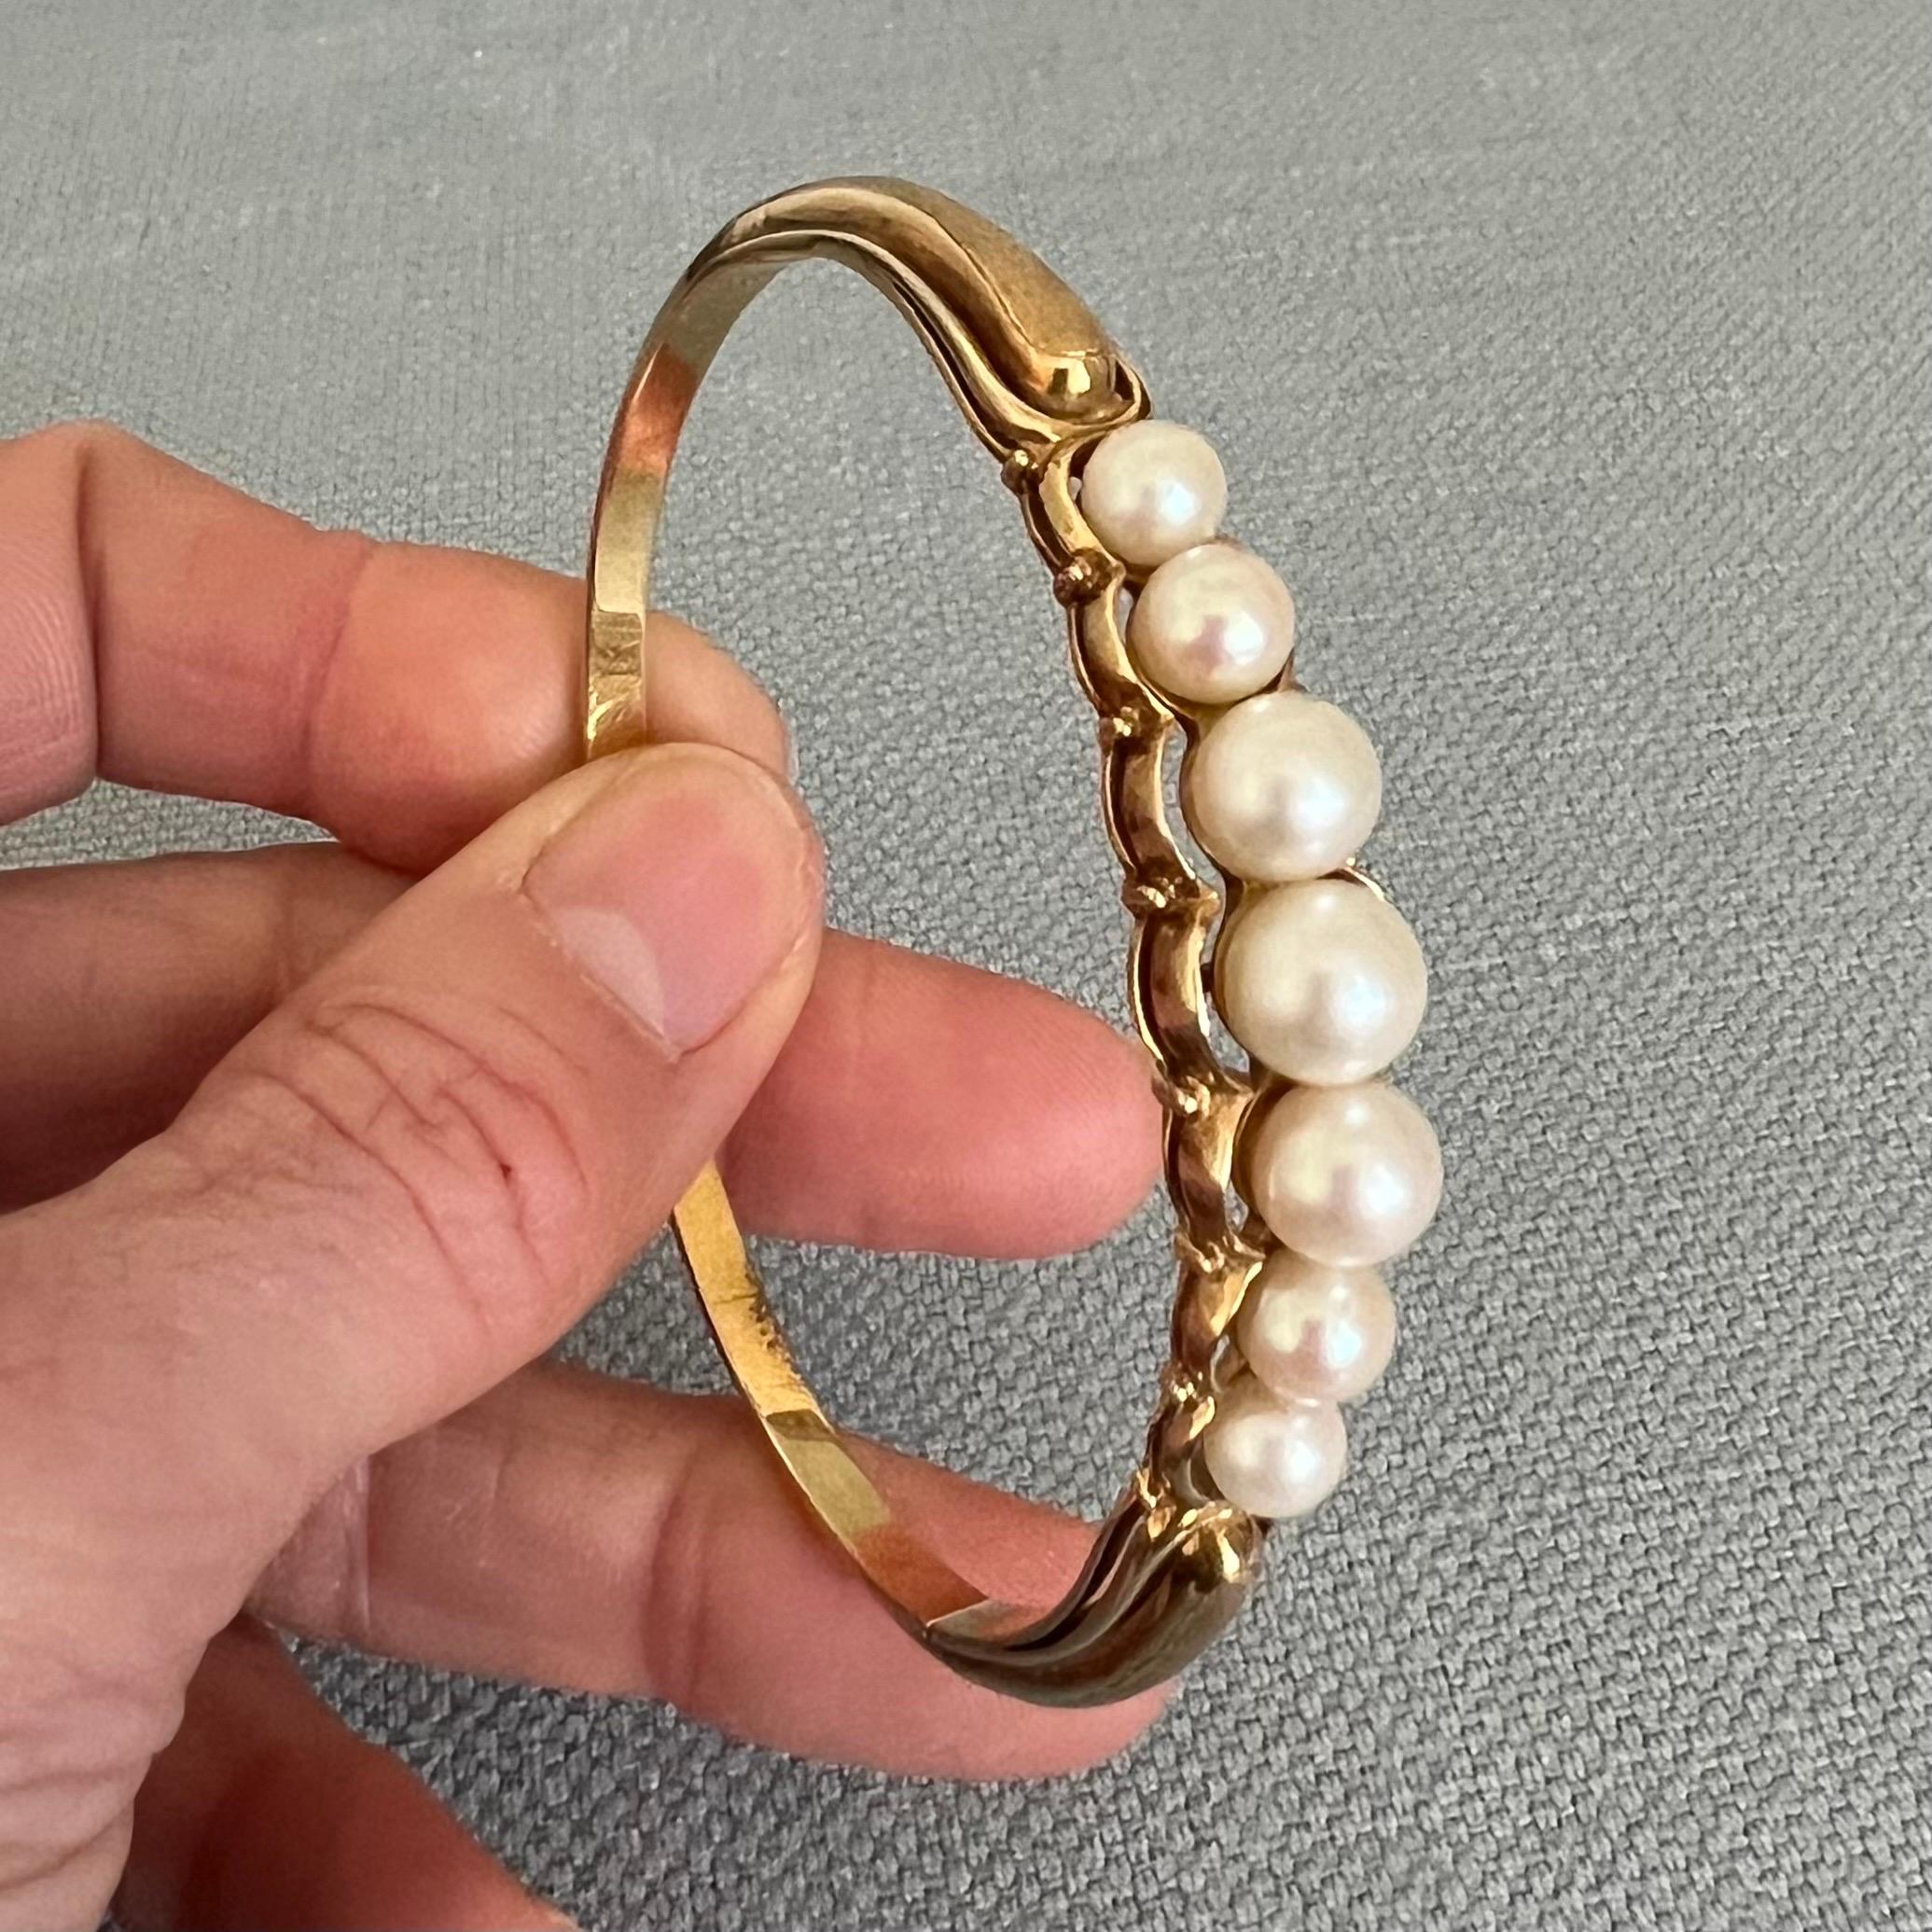 Ce bracelet bangle vintage en perles d'or 14 carats est magnifique ! Le bracelet présente une rangée de perles Akoya sur une magnifique monture en or 14 carats. Le bracelet est orné de sept perles au lustre et à l'éclat magnifiques. La partie